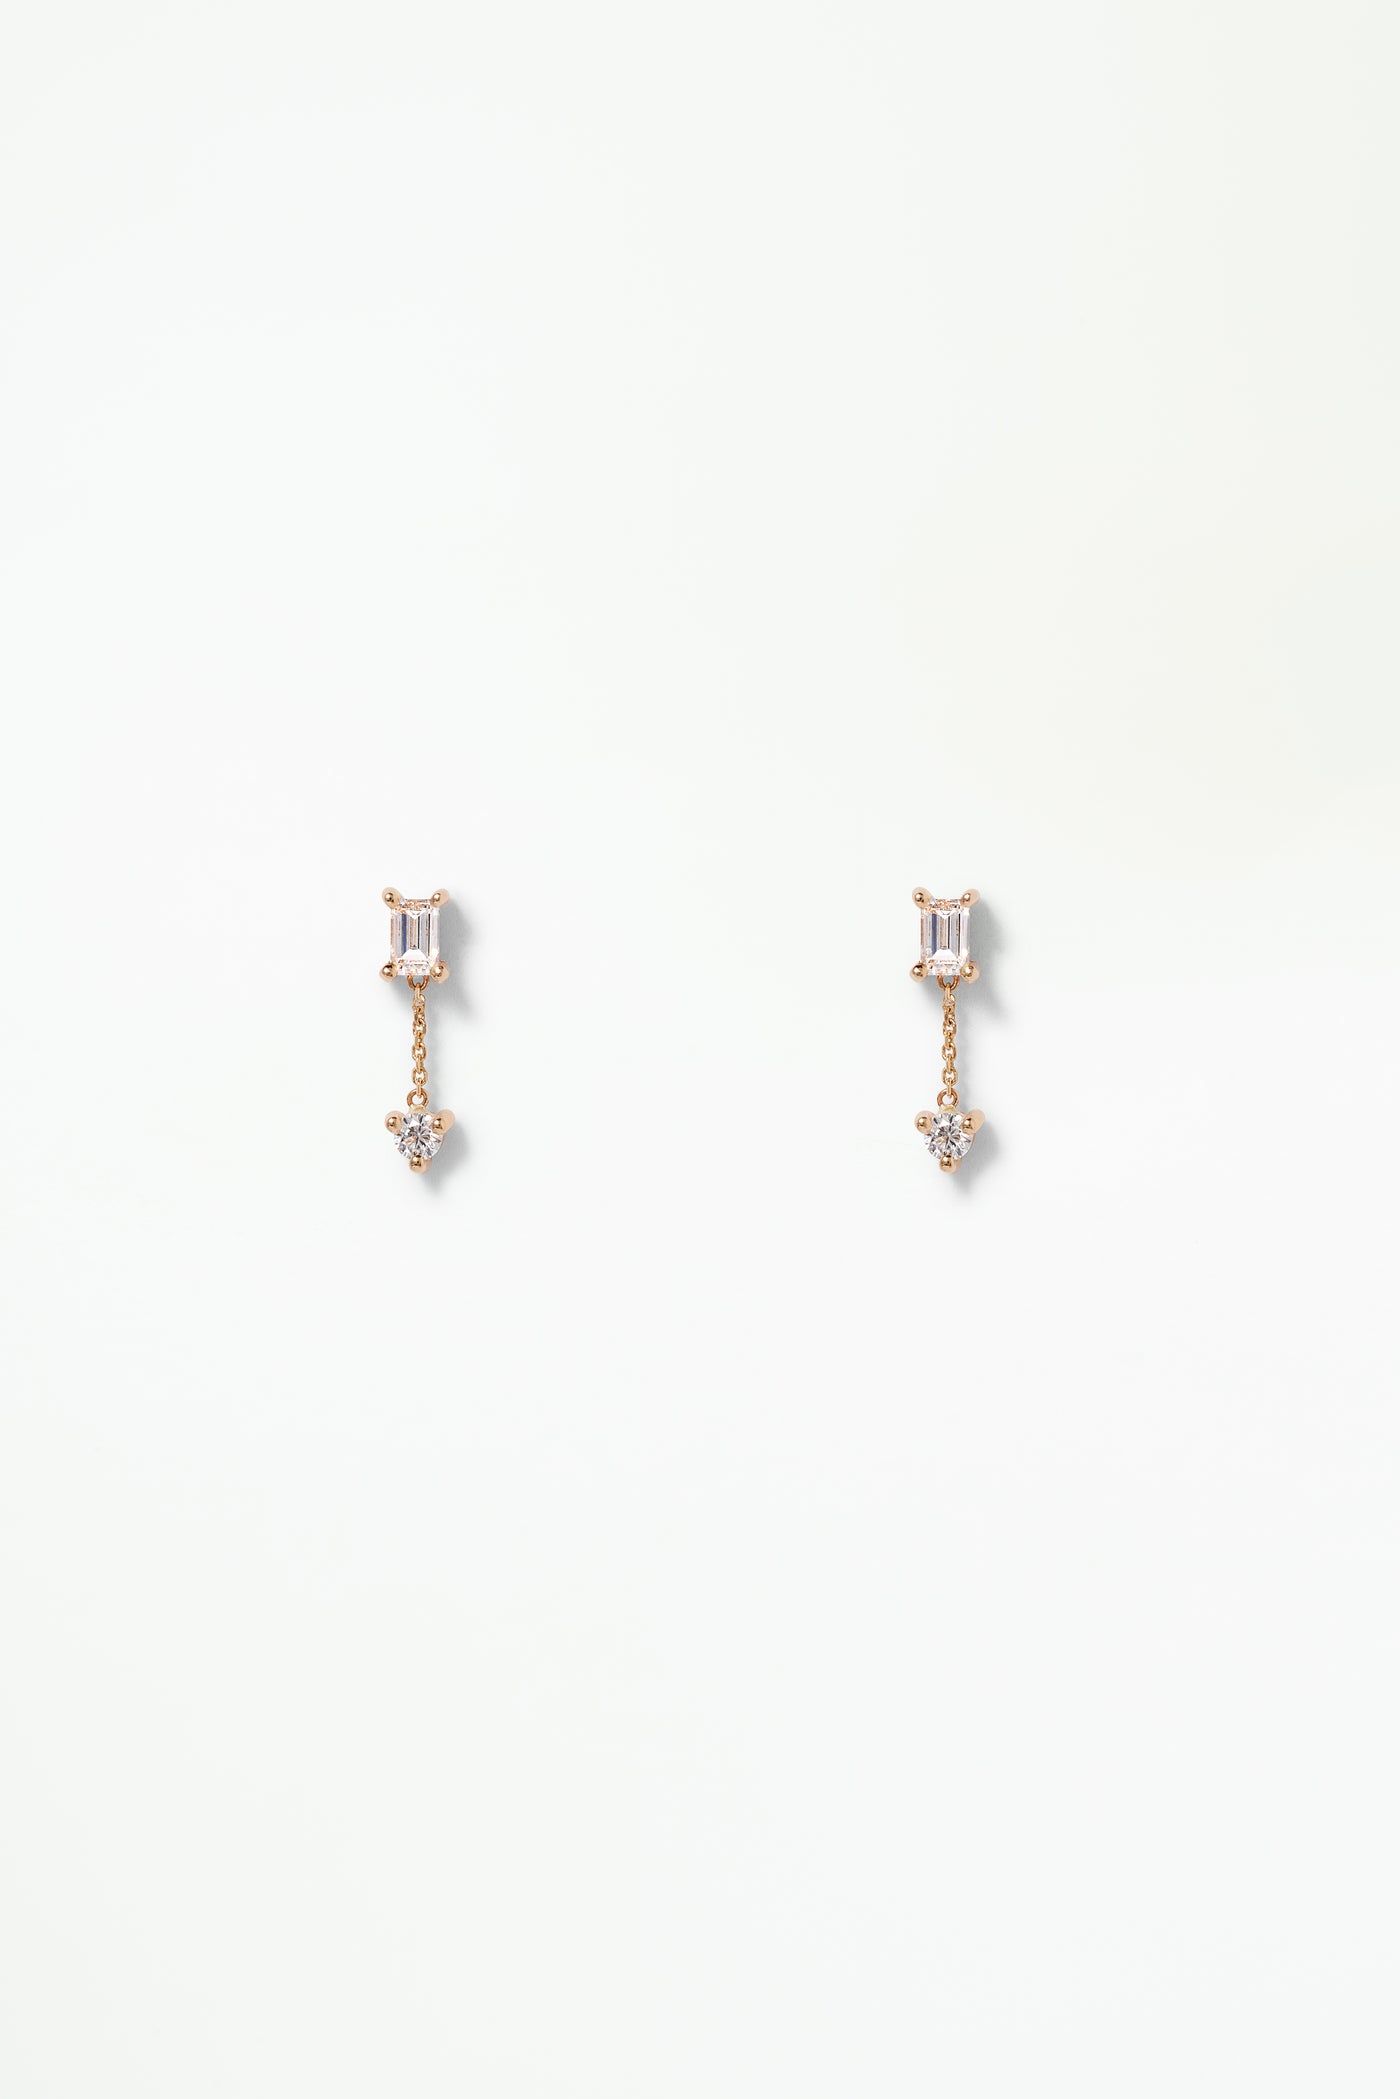 Fancy Diamond Two-Step Chain Earring - Single